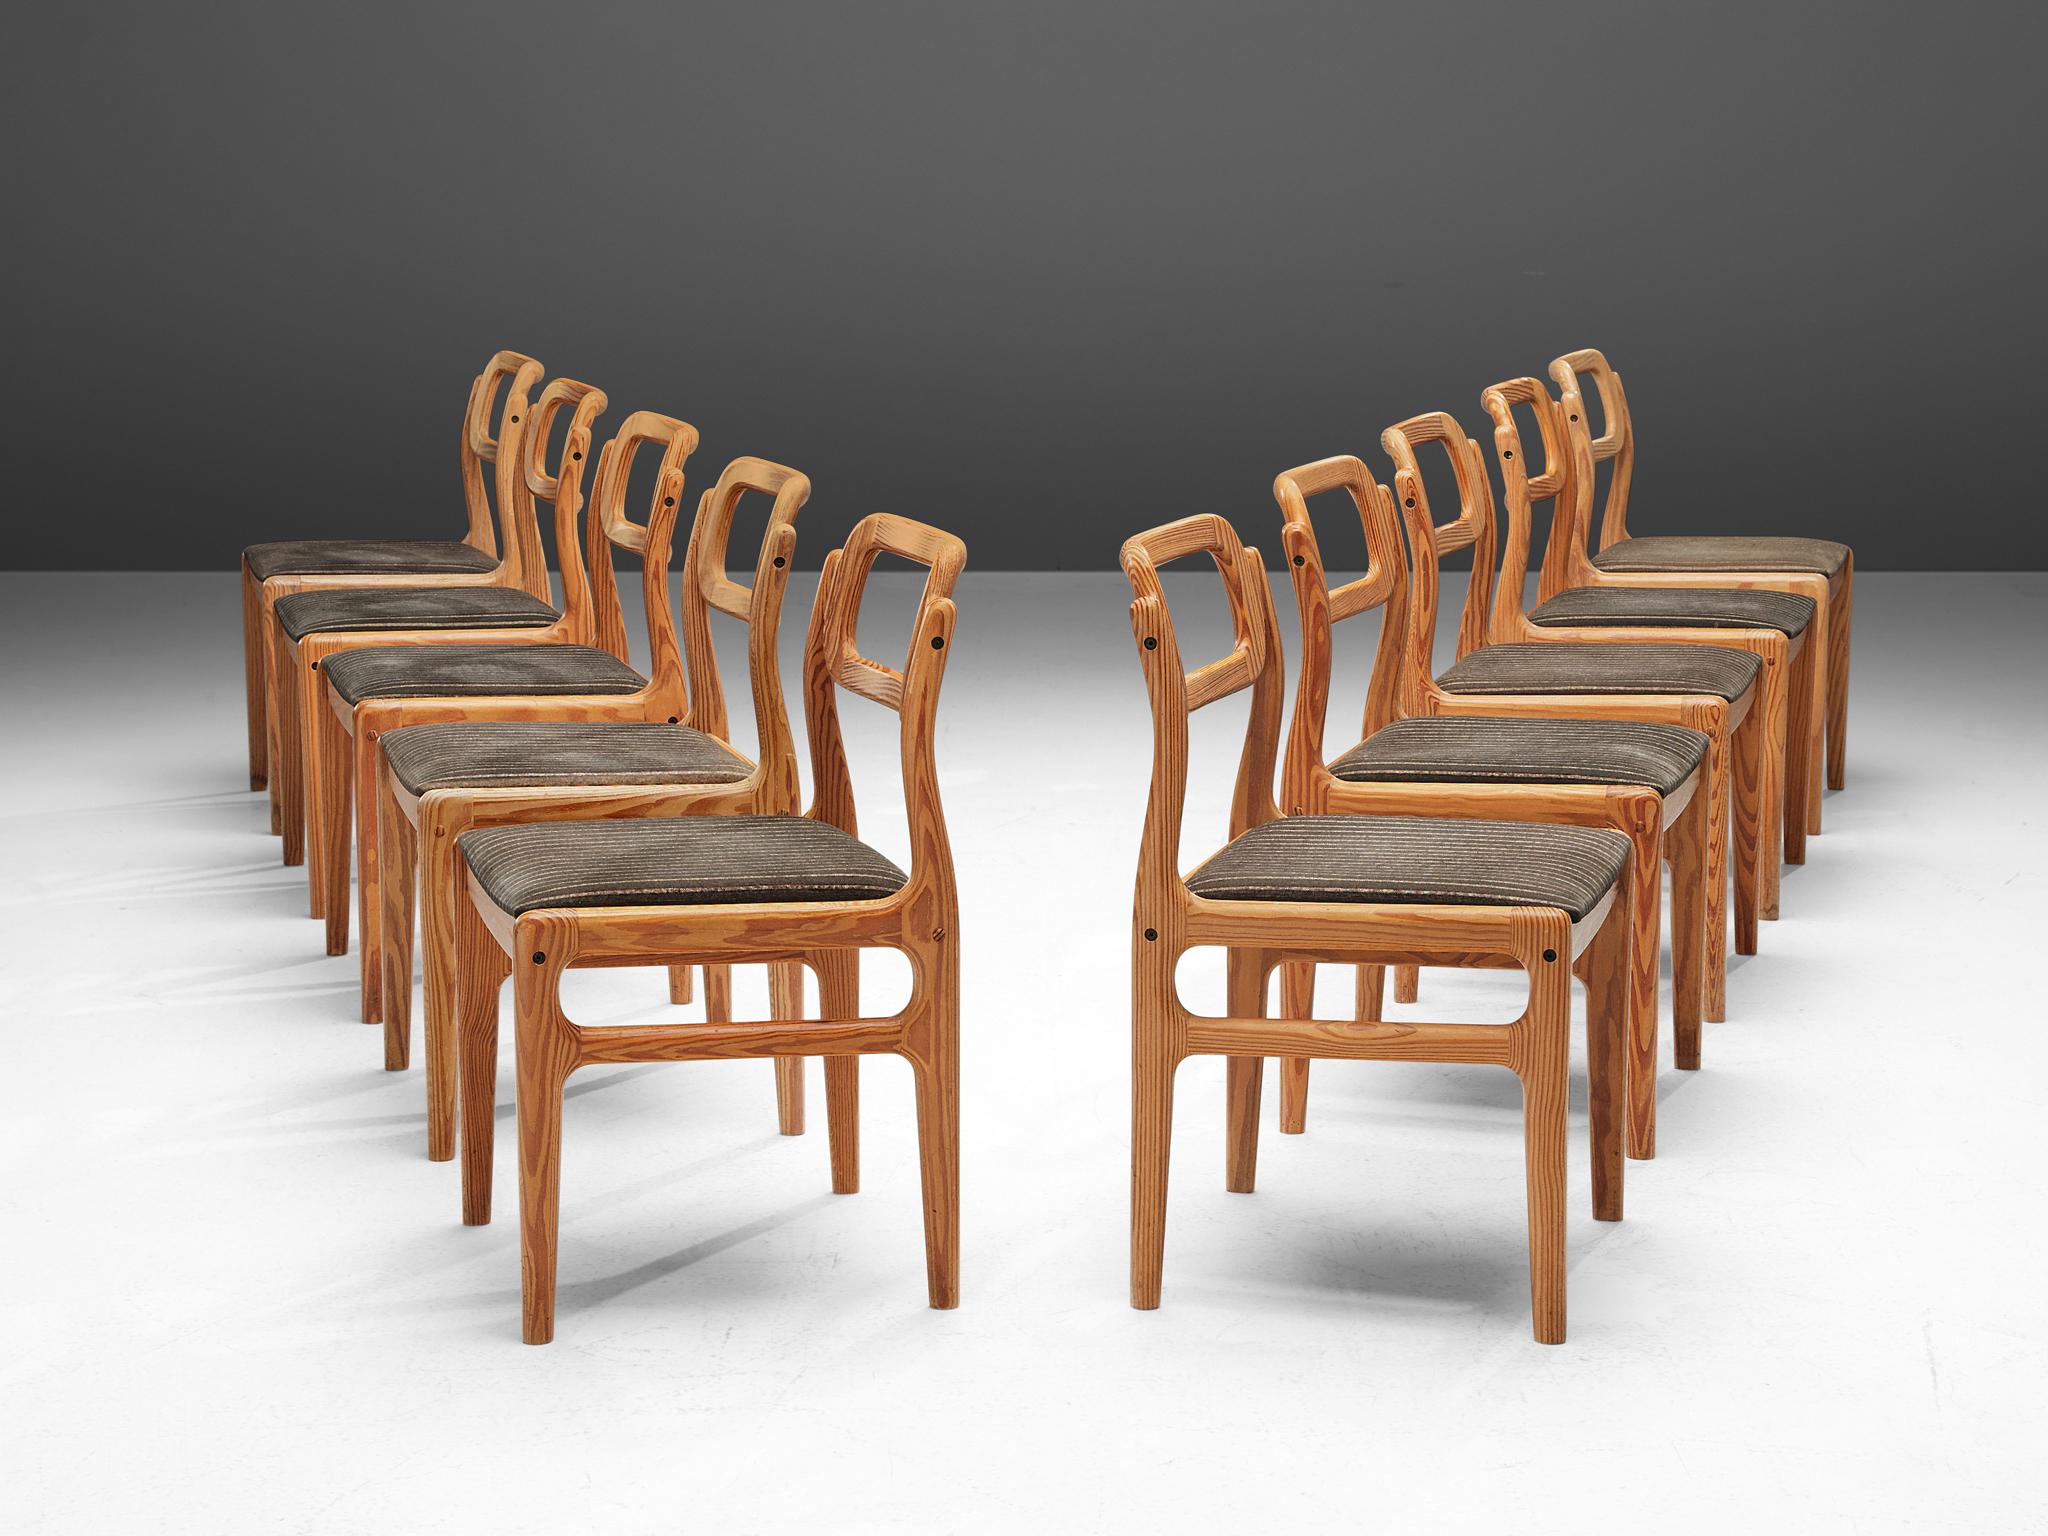 Johannes Andersen für Uldum Møbelfabrik, Satz von zehn Esszimmerstühlen, Kiefer, Stoff, Dänemark, 1960er

Diese Esszimmerstühle gehören zum Stil der skandinavischen Moderne und wurden von Johannes Andersen in den 1960er Jahren entworfen. Die aus